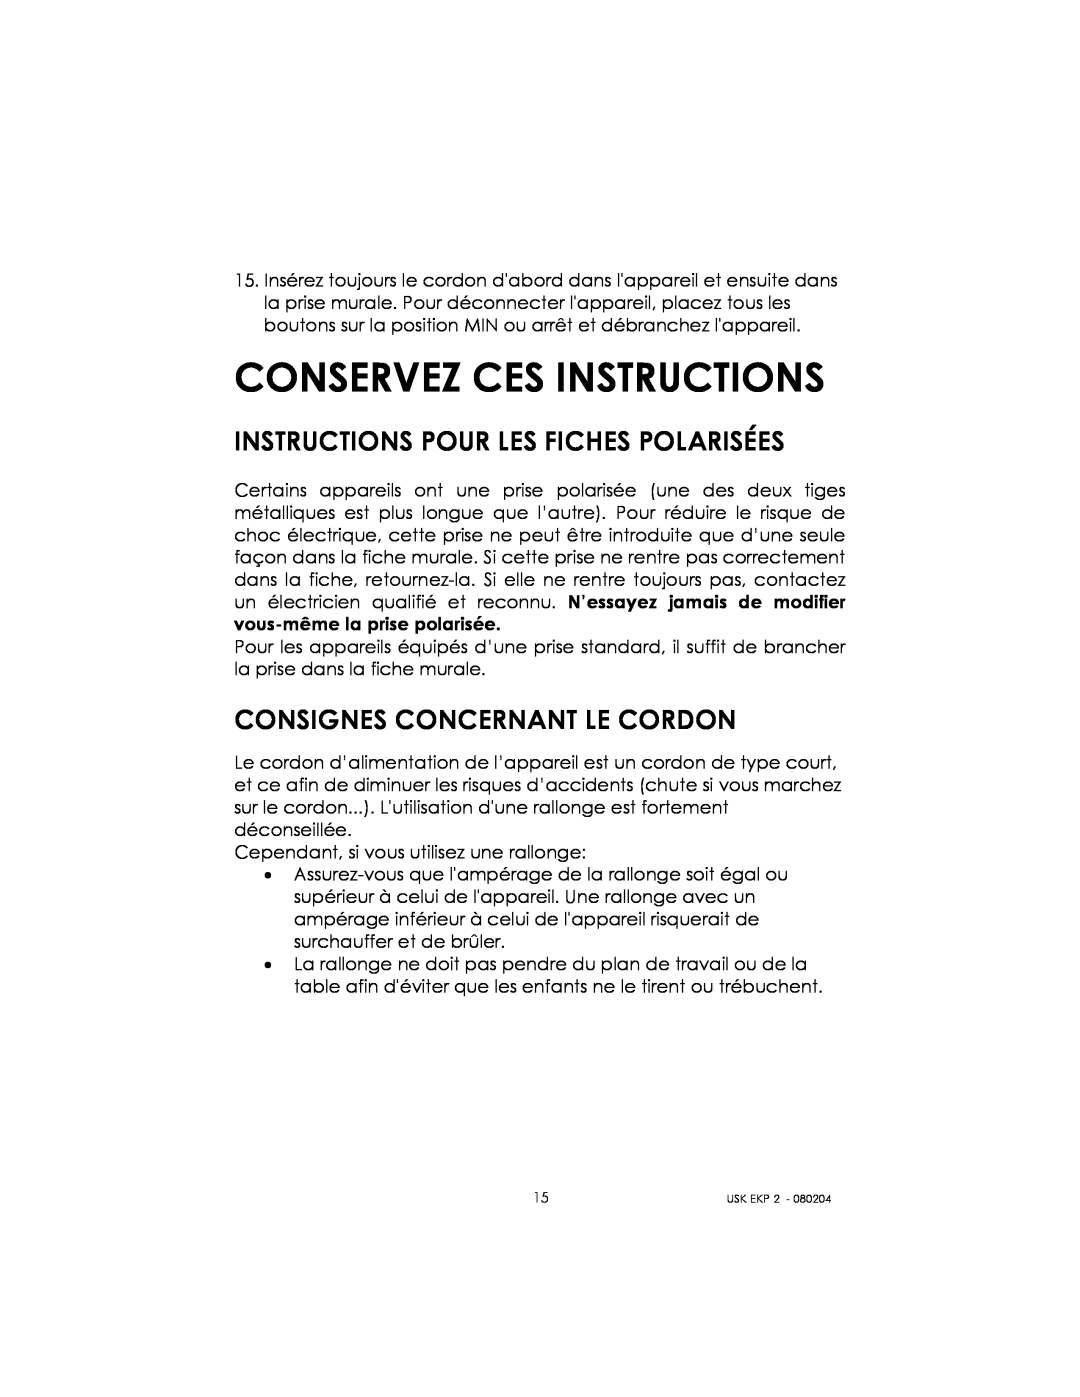 Kalorik 80204 manual Conservez Ces Instructions, Instructions Pour Les Fiches Polarisées, Consignes Concernant Le Cordon 